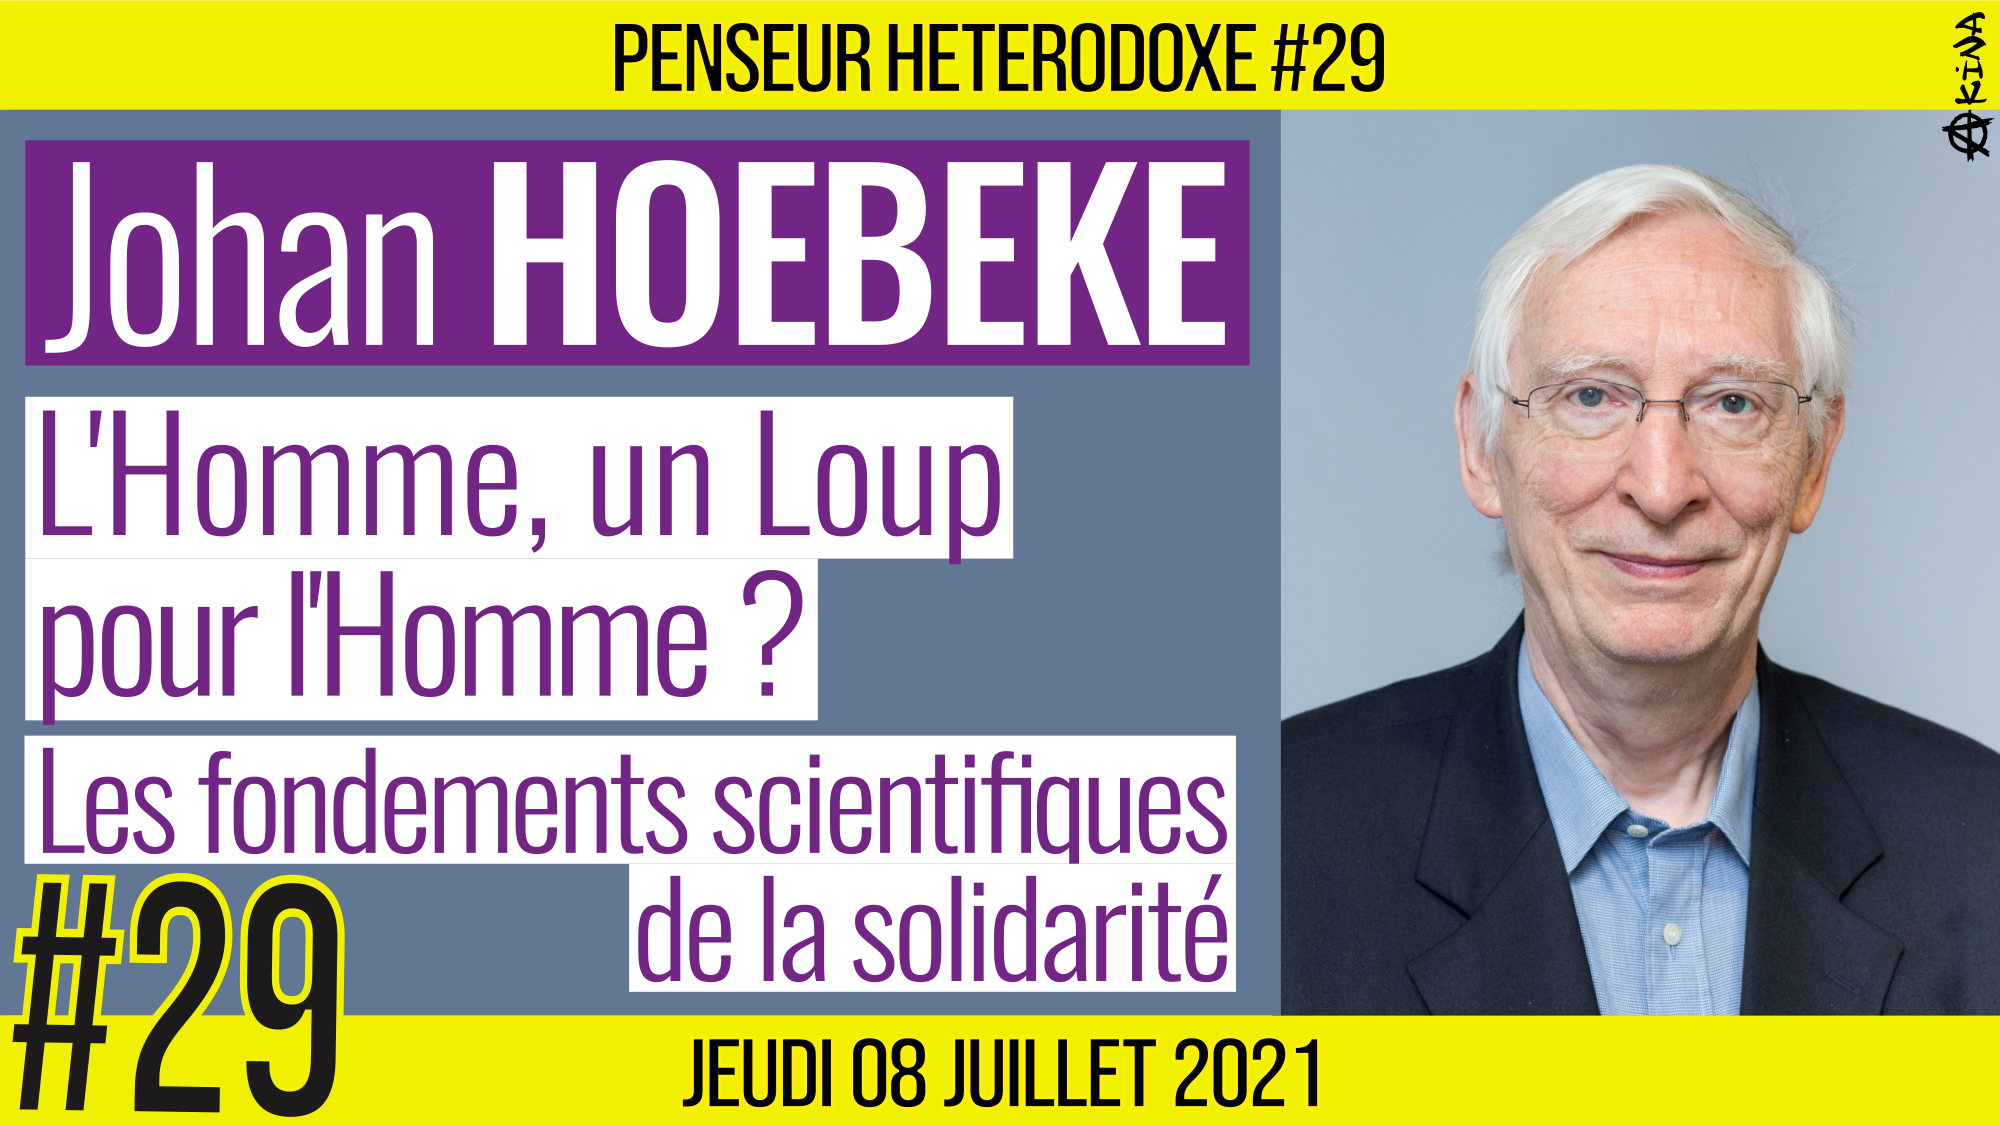 💡 PENSEUR HÉTÉRODOXE #29 🗣 Johan HOEBEKE 🎯 L’Homme, un loup pour l’Homme ? 📆 08-07-2021